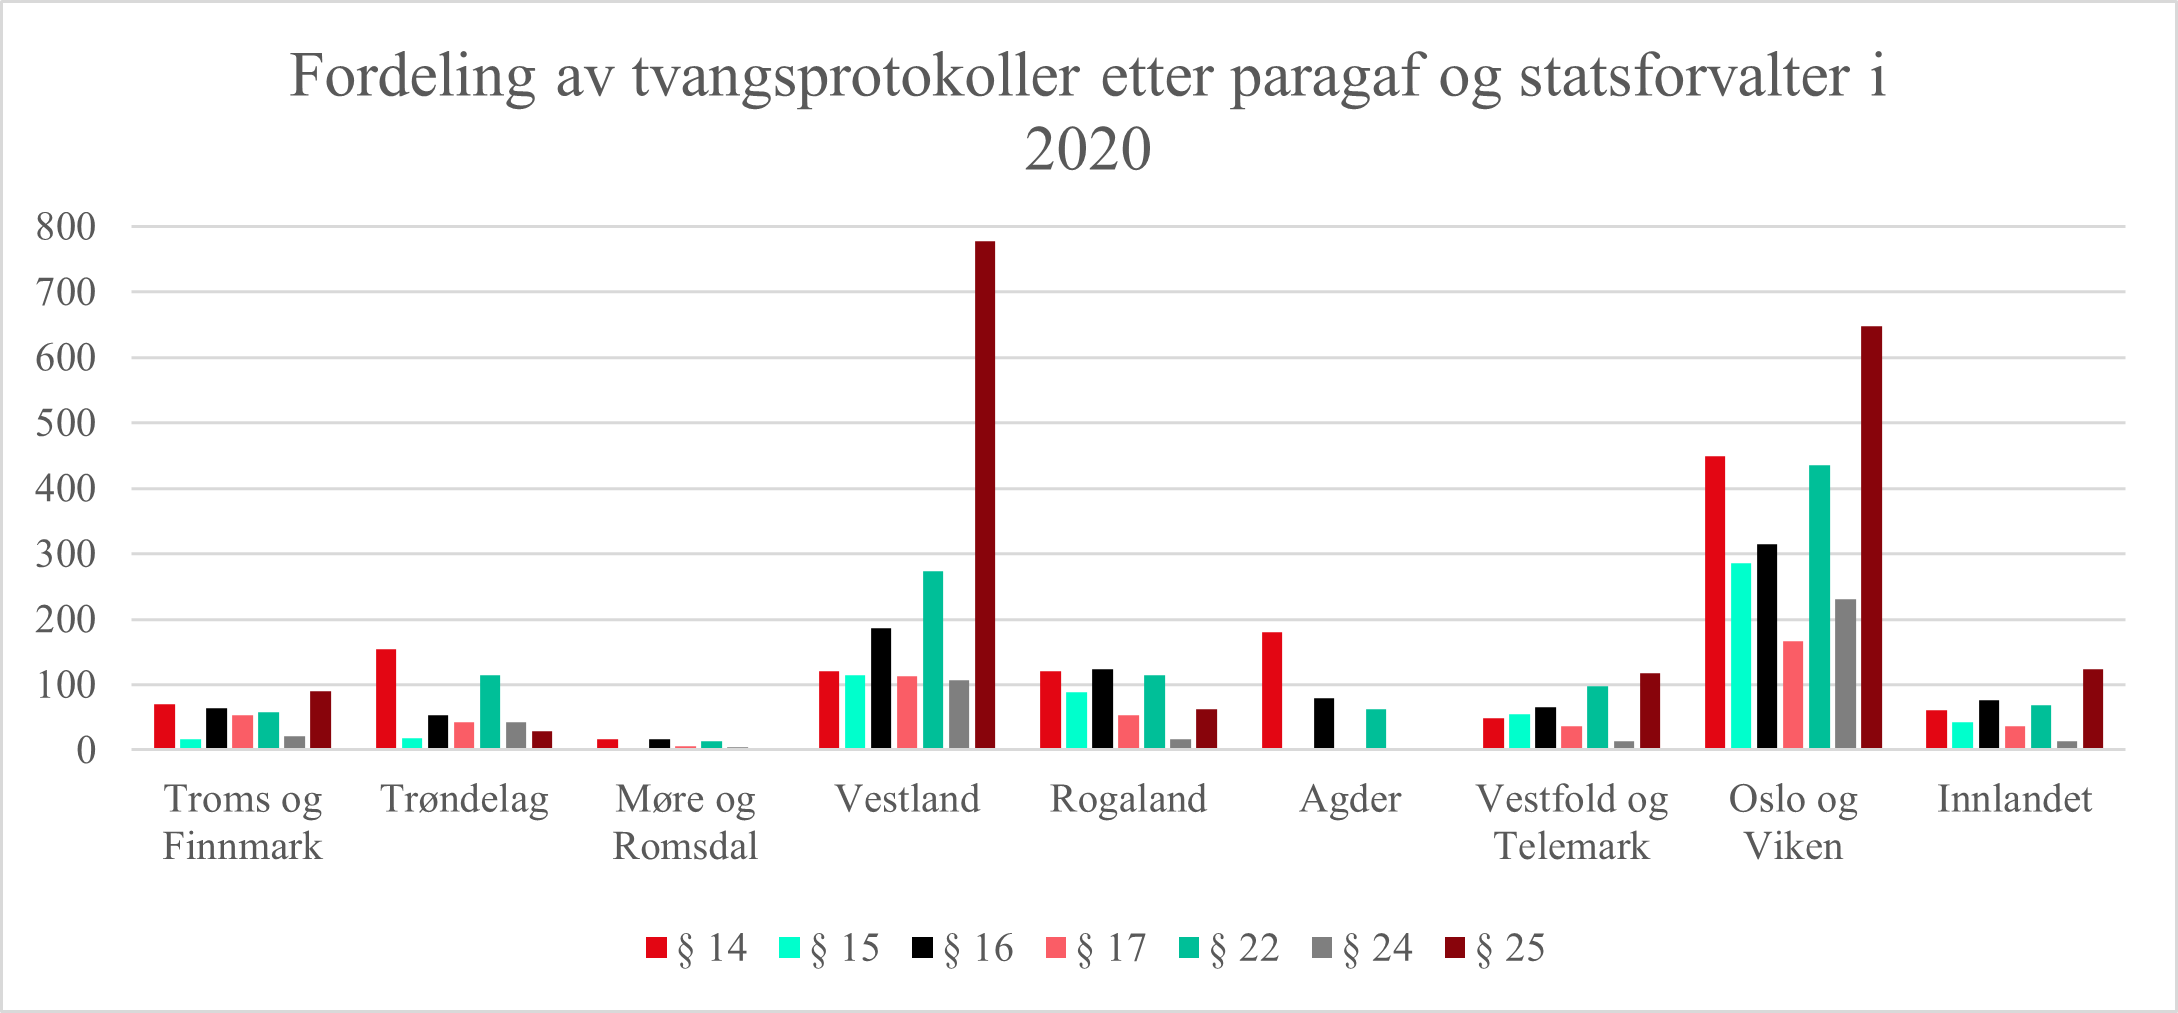 Fordeling av tvangsprotokoller etter paragaf og statsforvalter i 2020